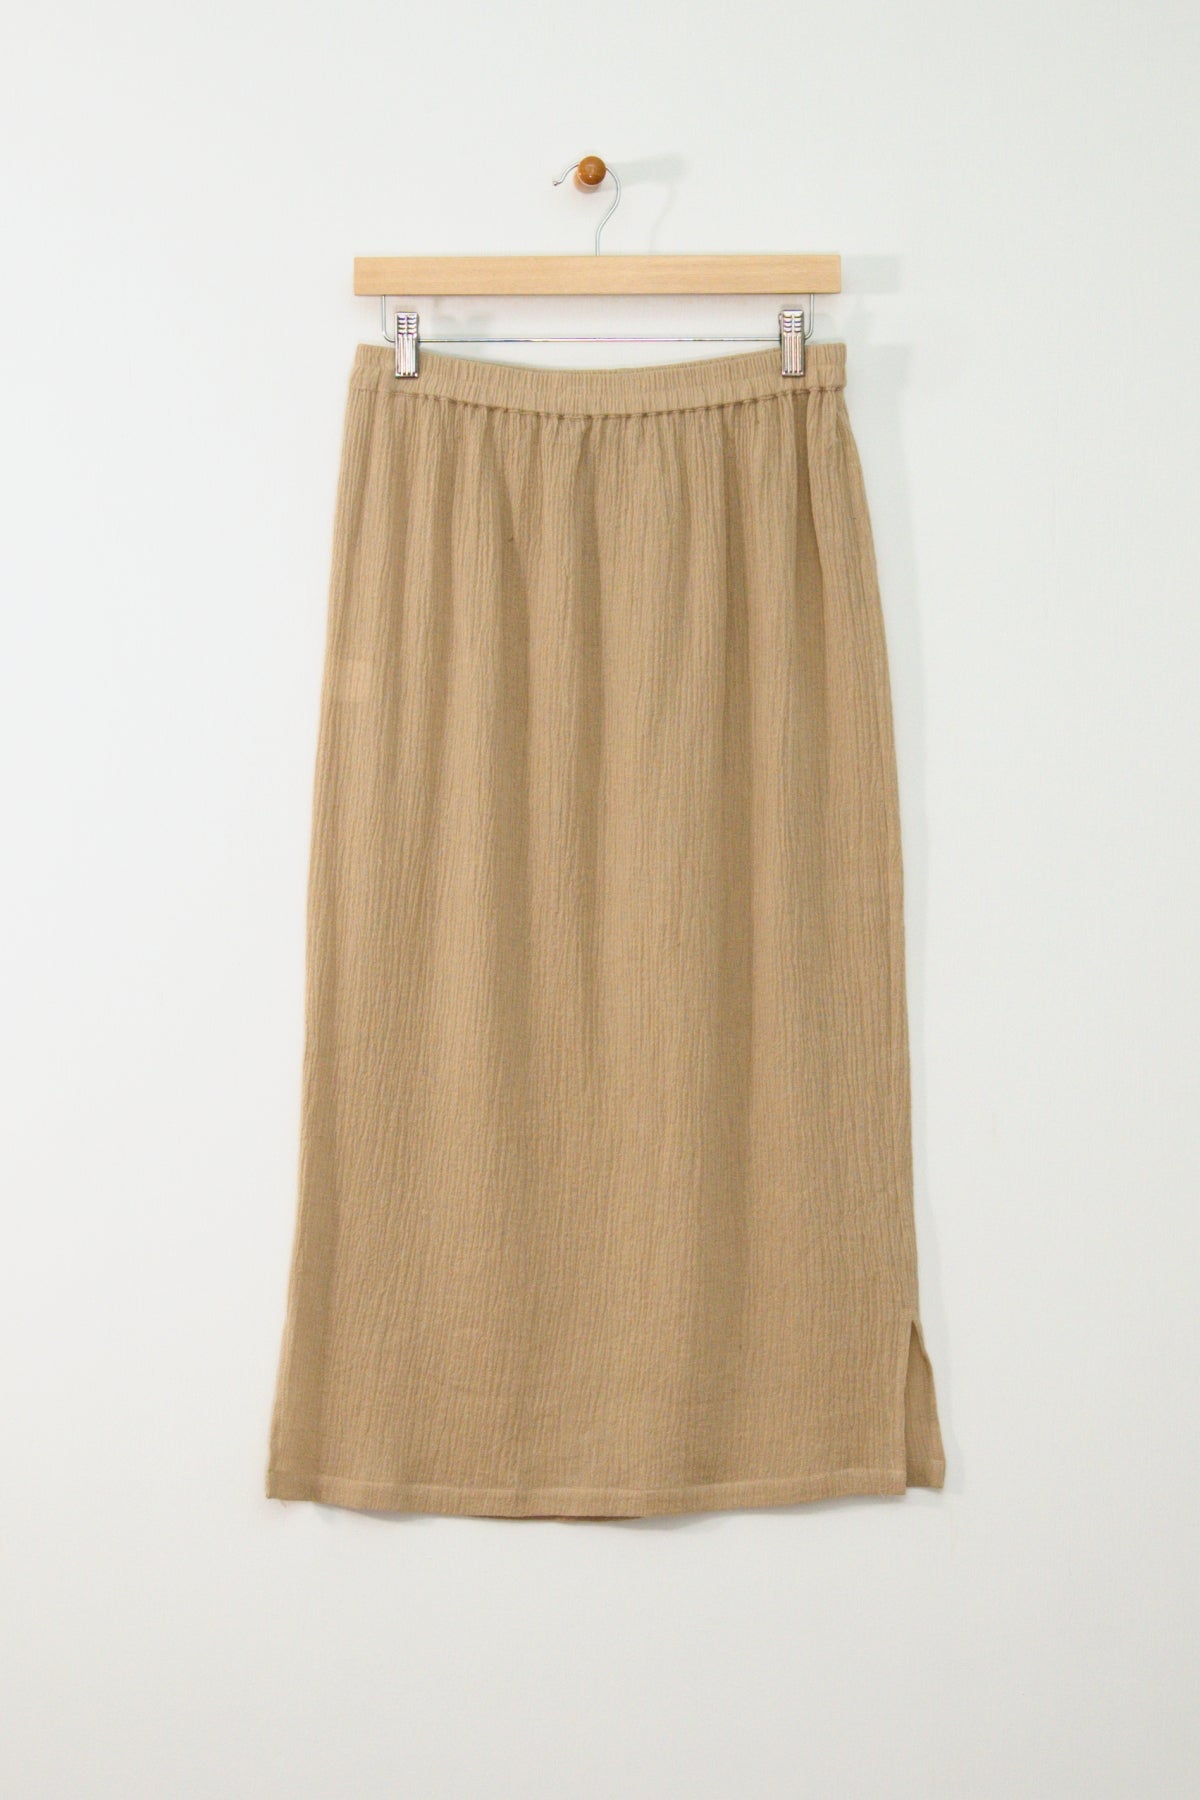 Gauze Long Skirt New Orleans Wovens